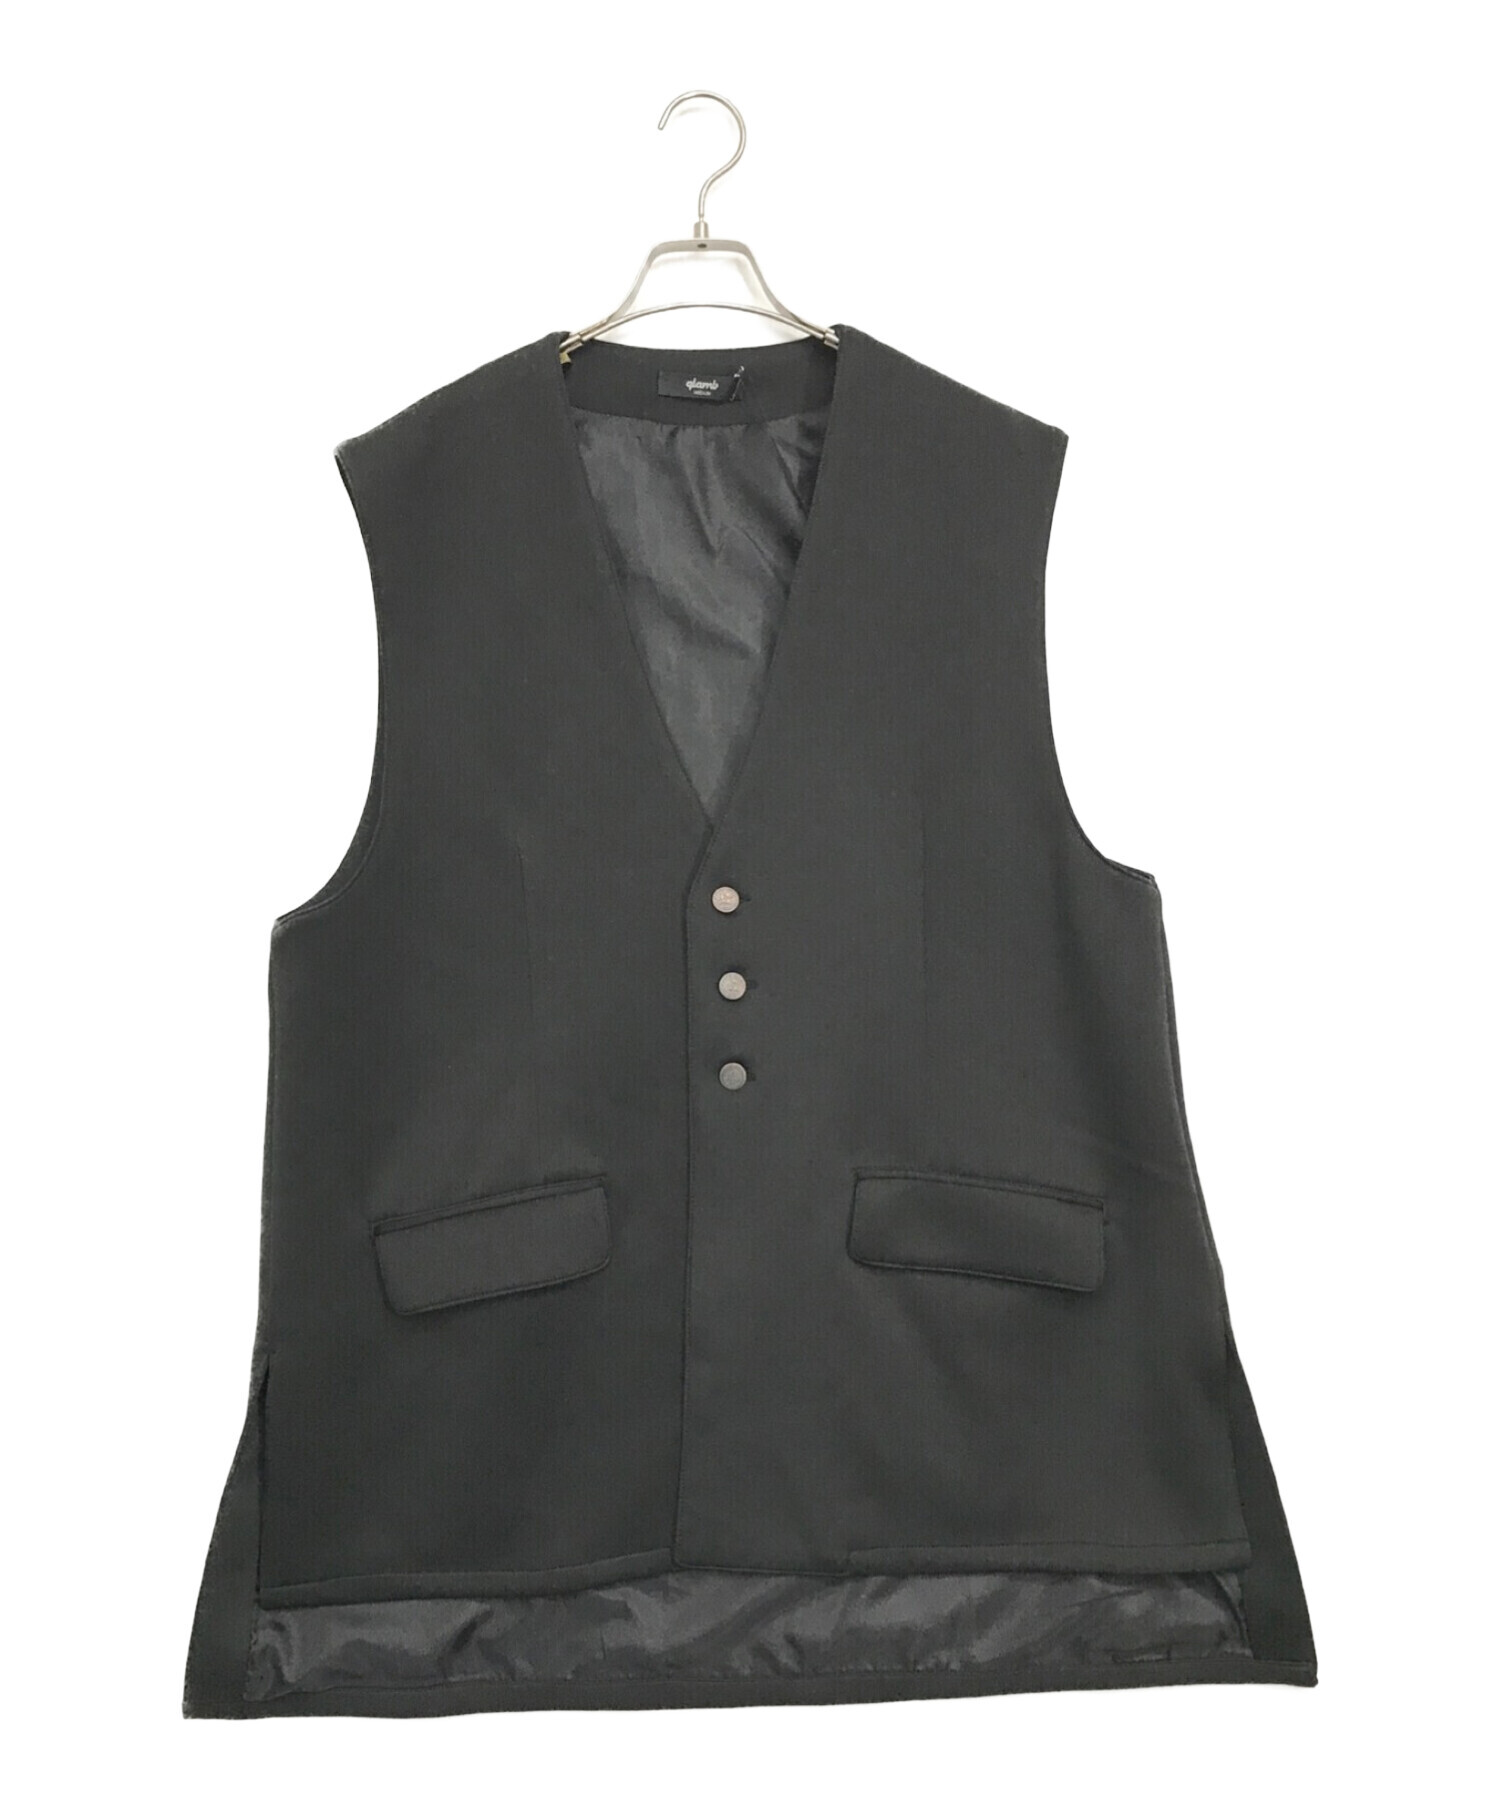 glamb (グラム) ノースリーブテーラードジャケット / No Sleeve Tailored JKT ブラック サイズ:M